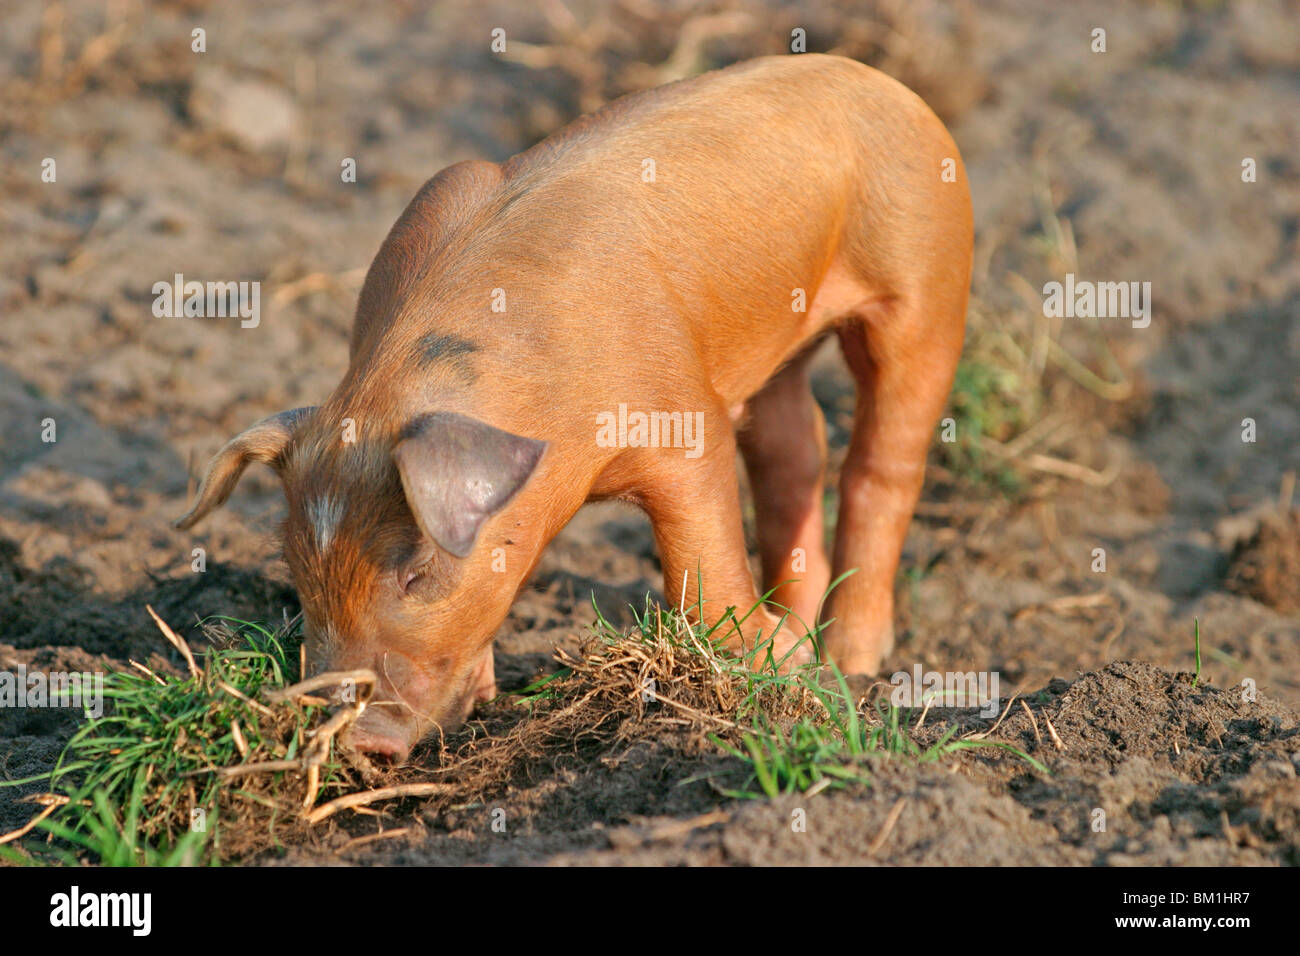 Schwein / pig Stock Photo